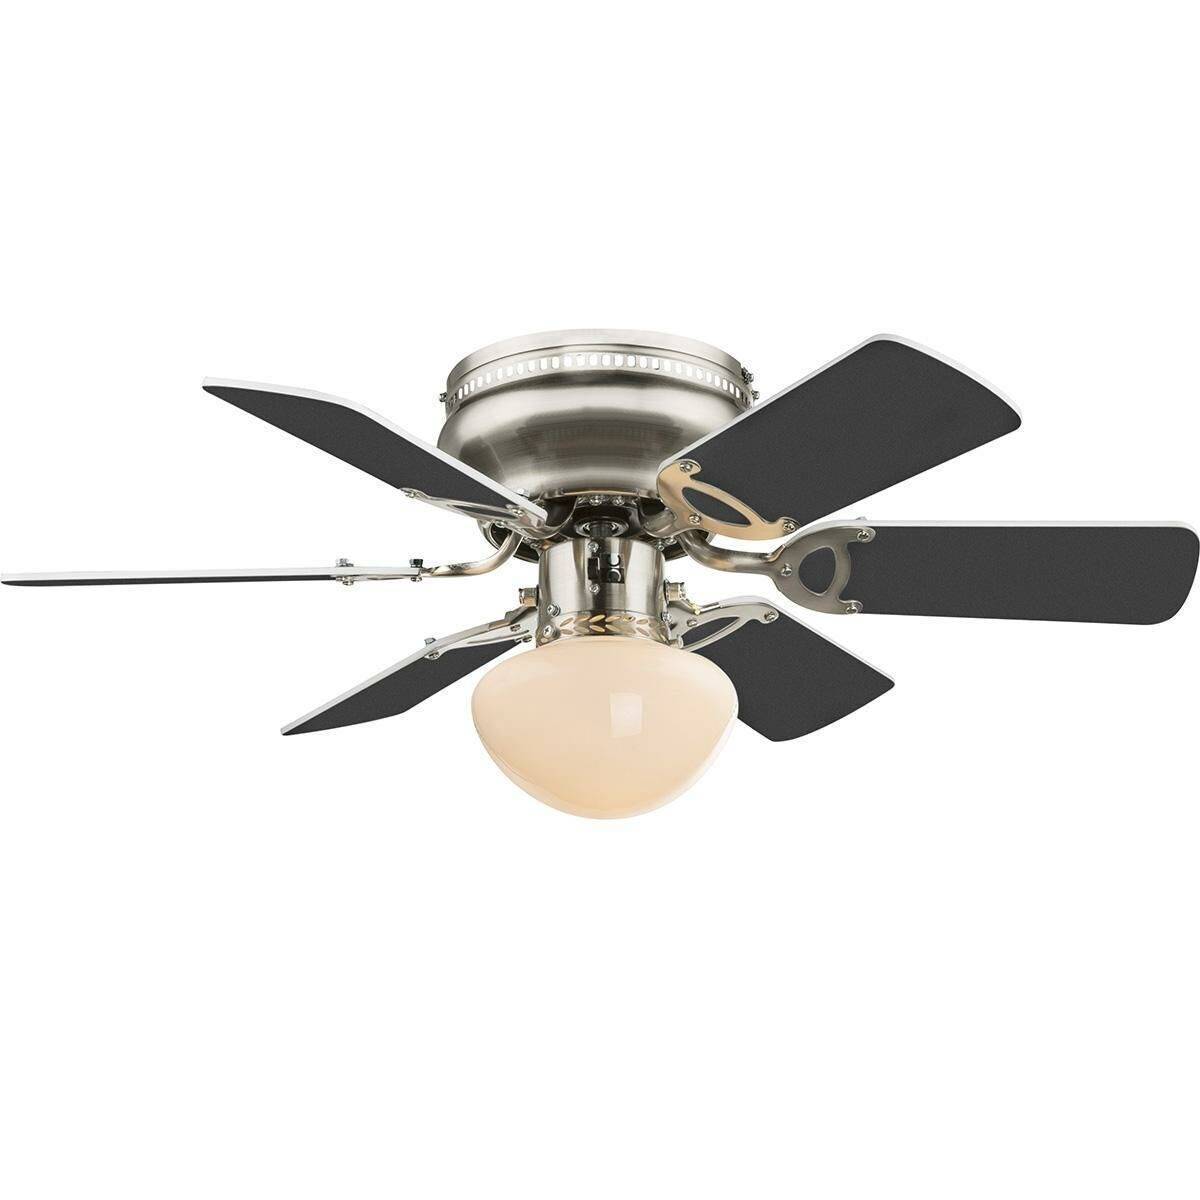 Потолочный вентилятор со светильником: функциональность и другие преимущества, использование в интерьере и выбор